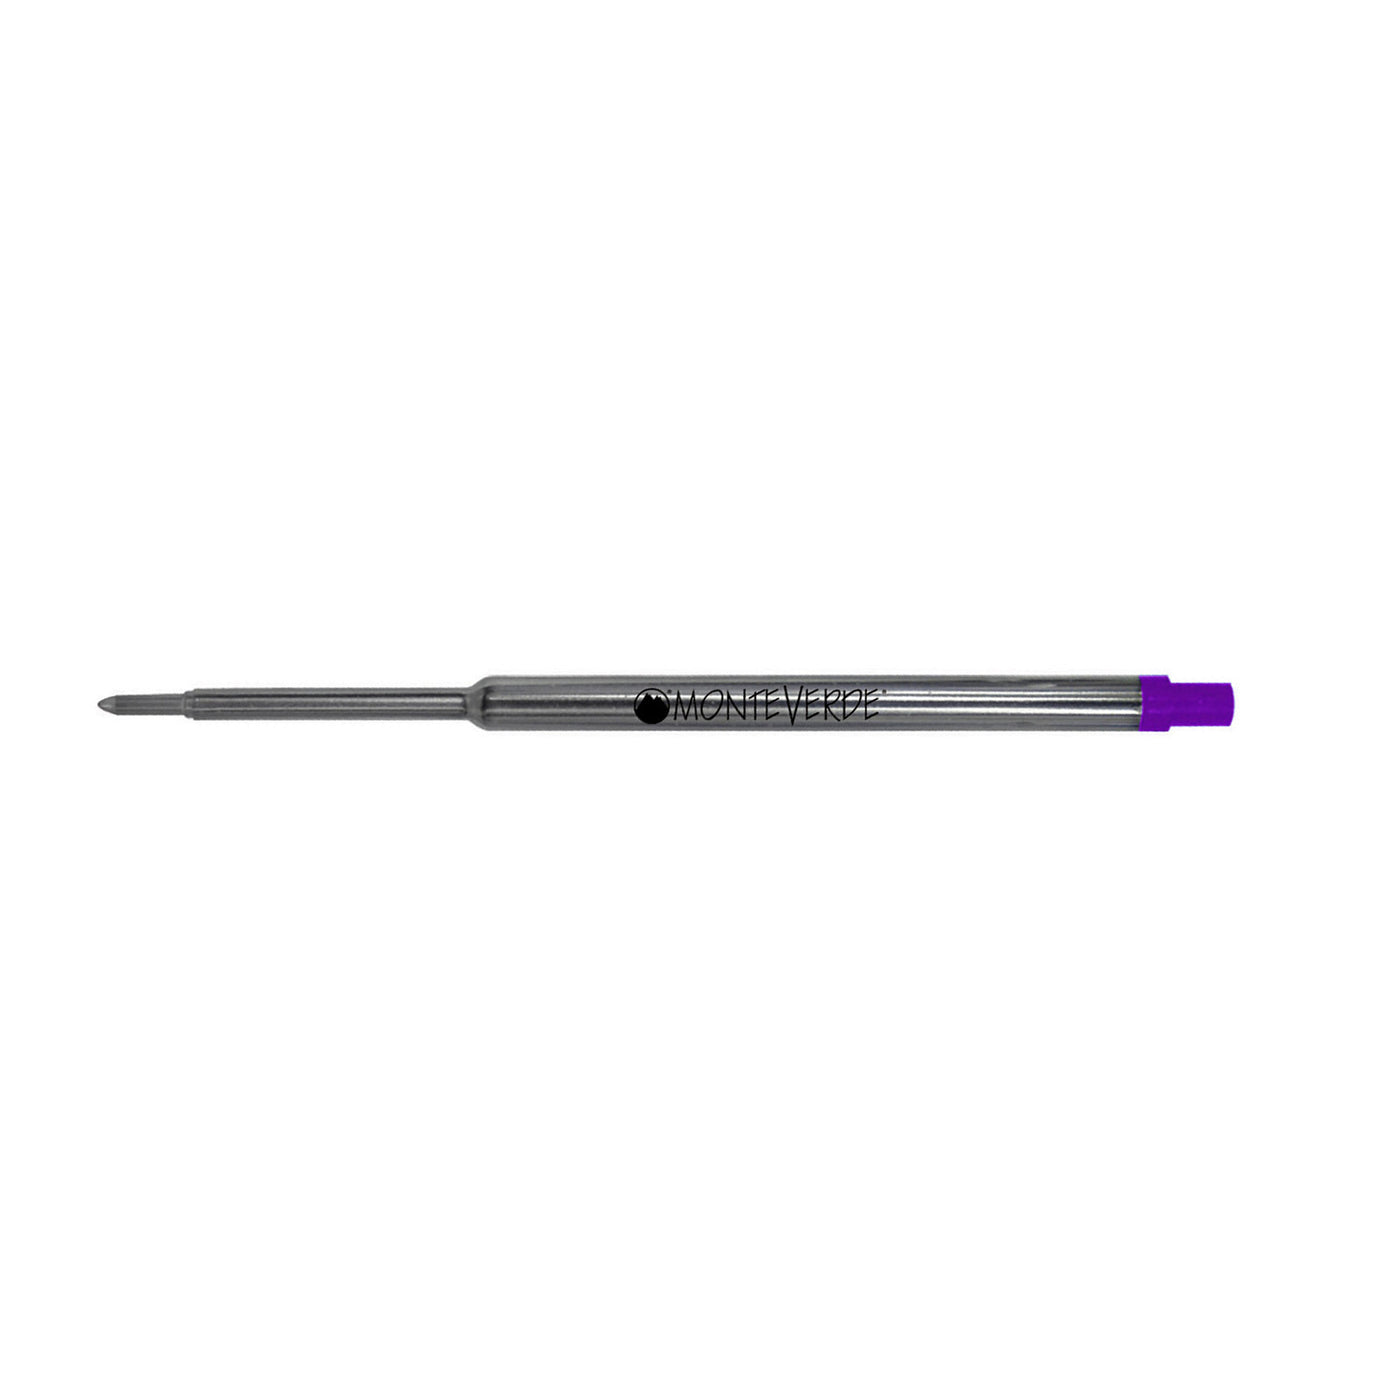  Monteverde Ball Pen Refill for Waterman - Medium - Purple - Pack of 2 3